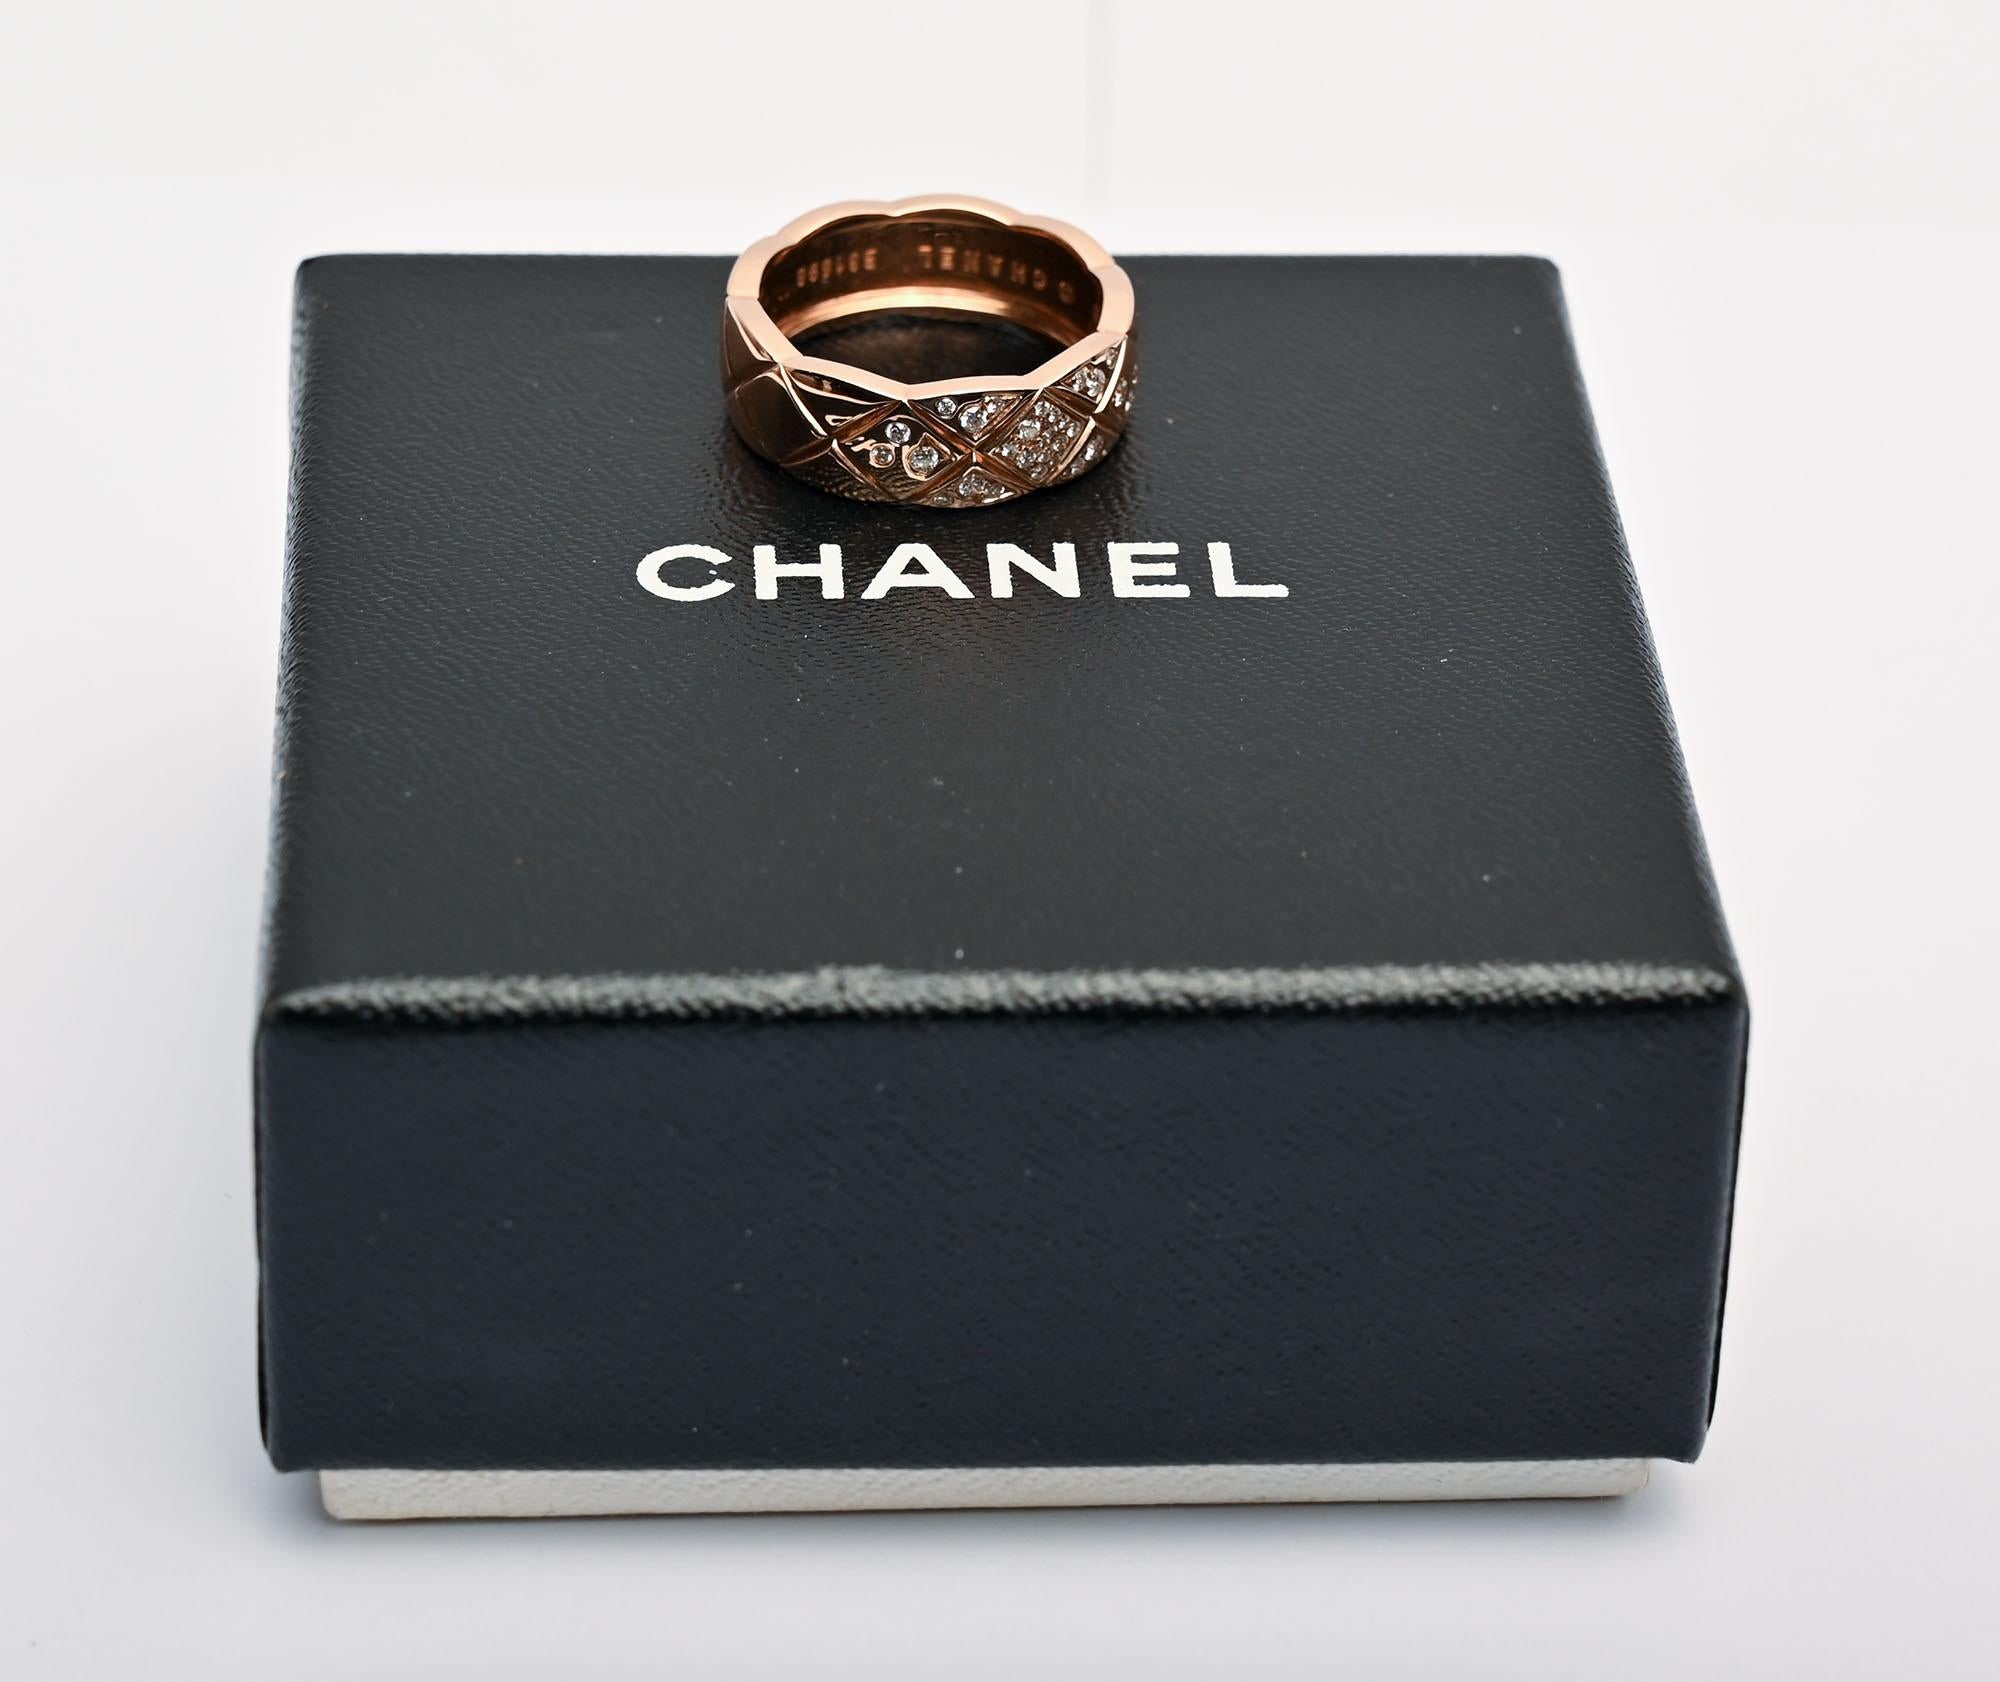 Cette bague Coco Crush est l'une des bagues les plus populaires et les plus connues de Chanel. Il est orné du motif matelassé classique de Chanel. Il est composé de ce que Chanel appelle de l'or beige, que la plupart des gens appelleraient de l'or